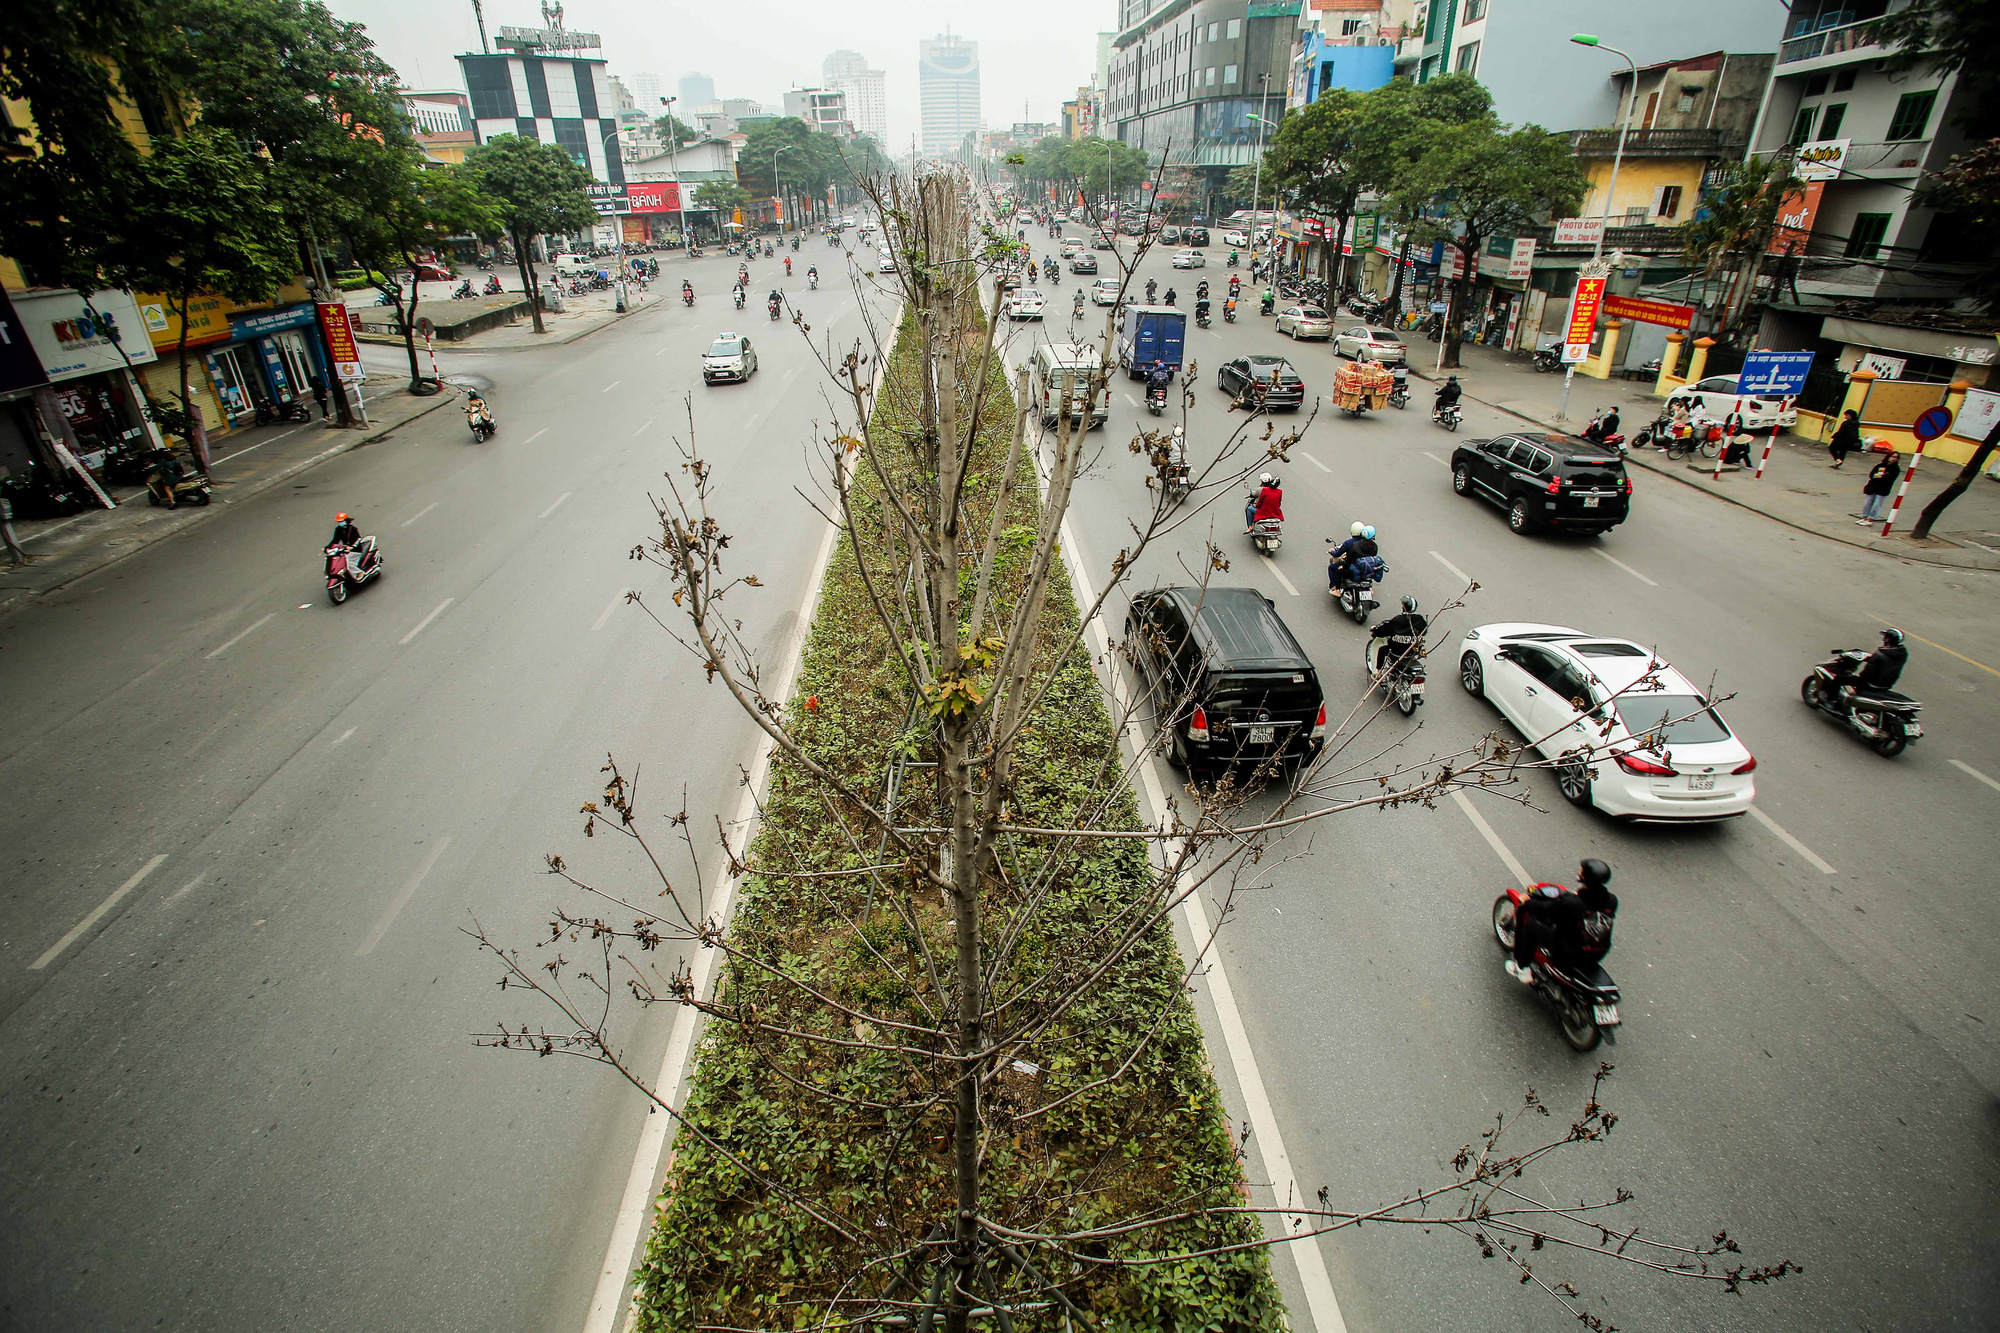 Đường phố những cây phong lá đỏ rực rỡ sắc màu là một thước phim rất đẹp của mùa thu. Hình ảnh cây phong lá đỏ đẹp trên đường sẽ làm cho bạn cảm thấy thoải mái, đầy năng lượng và cảm nhận được sự tuyệt vời của một mùa thu nơi đất trời Việt Nam.